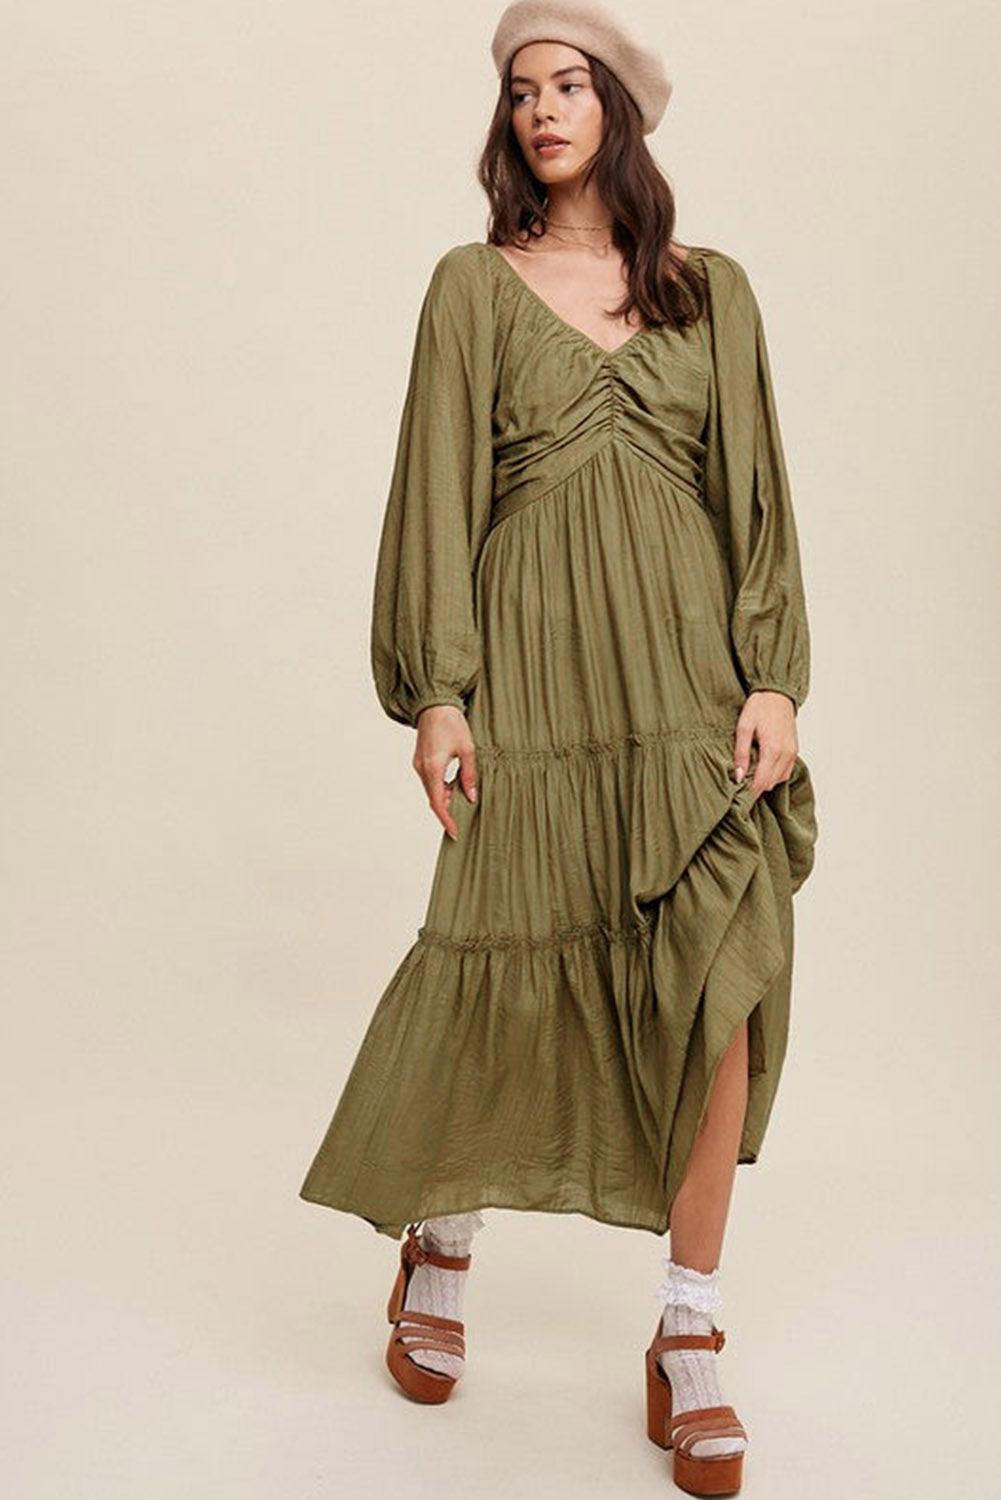 Green V Neck Bowknot Cutout Frill Tiered Maxi Dress - L & M Kee, LLC